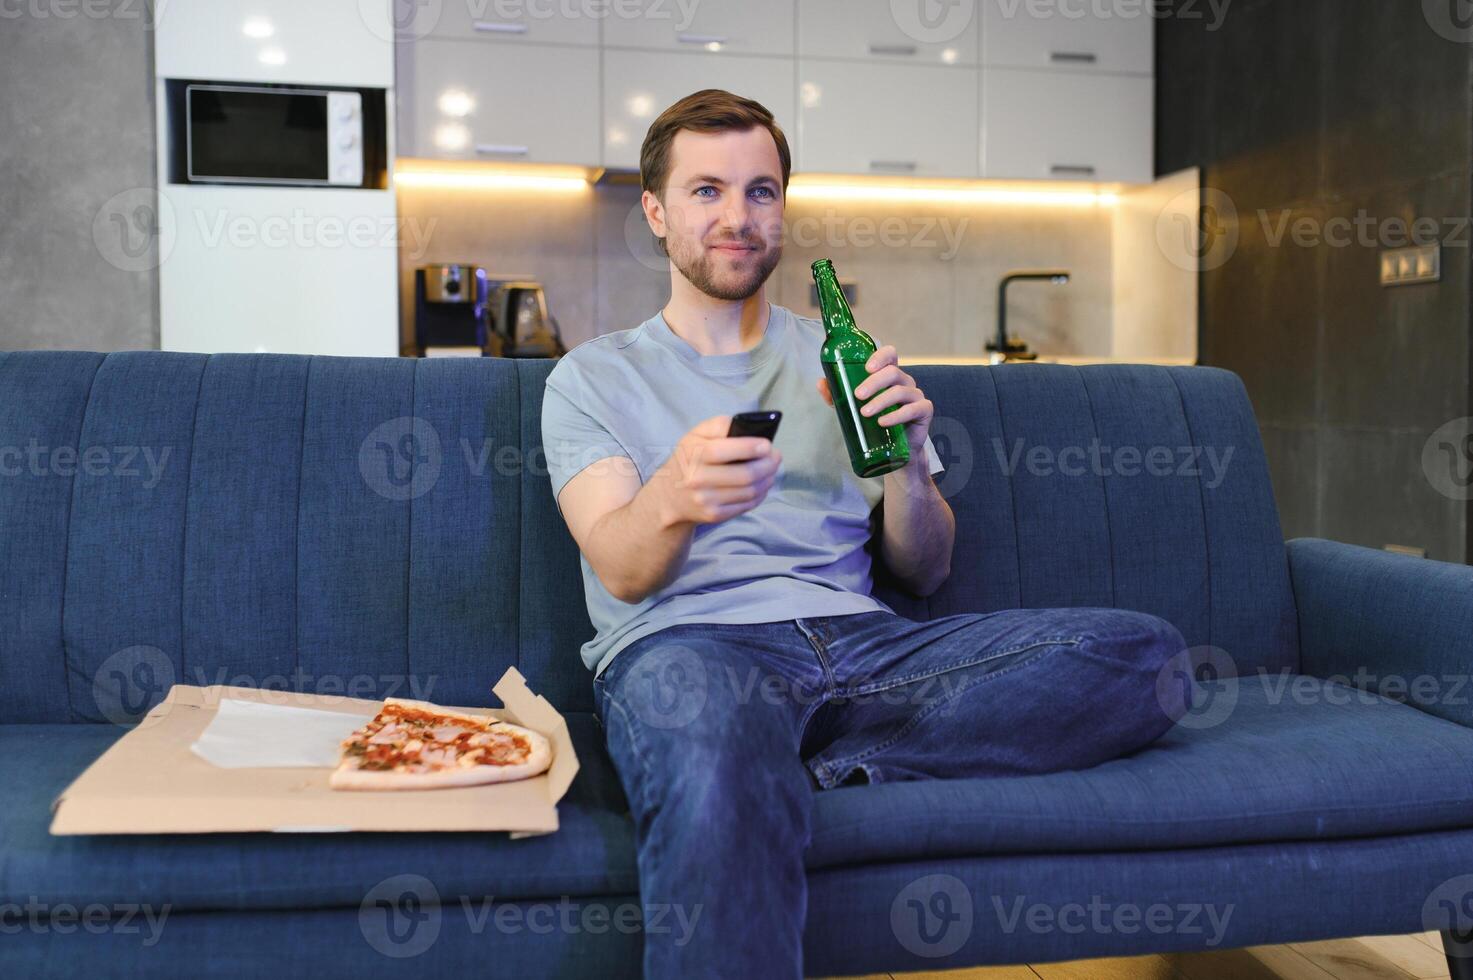 mange Pizza tandis que en train de regarder la télé montrer. homme avec barbe à l'intérieur. photo